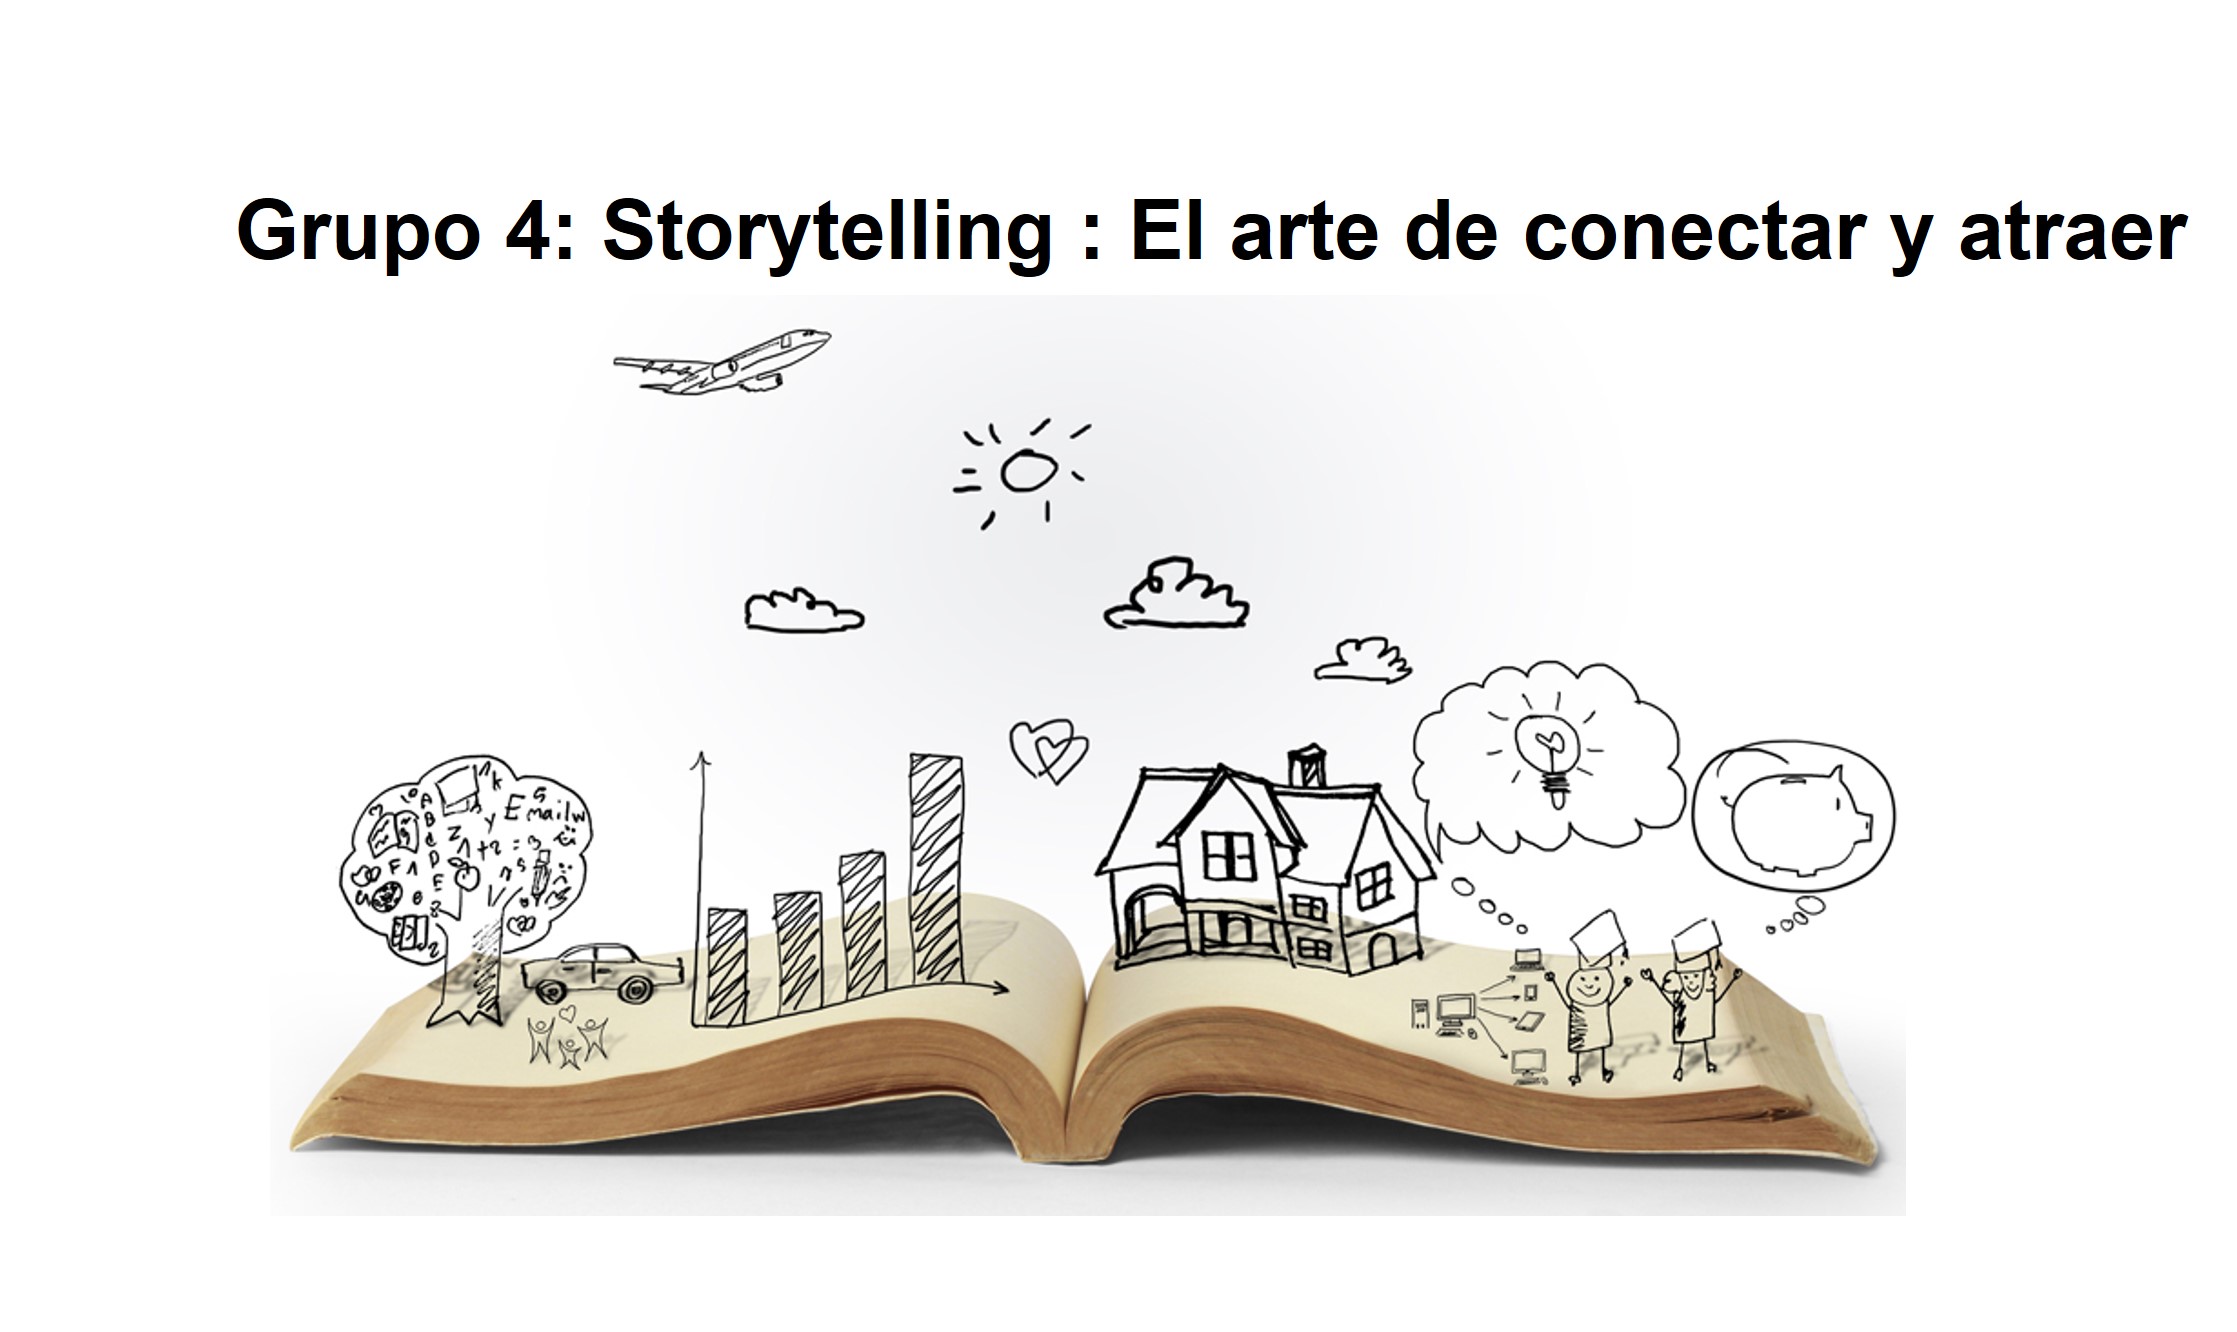 Grupo 4: Storytelling : El arte de conectar y atraer